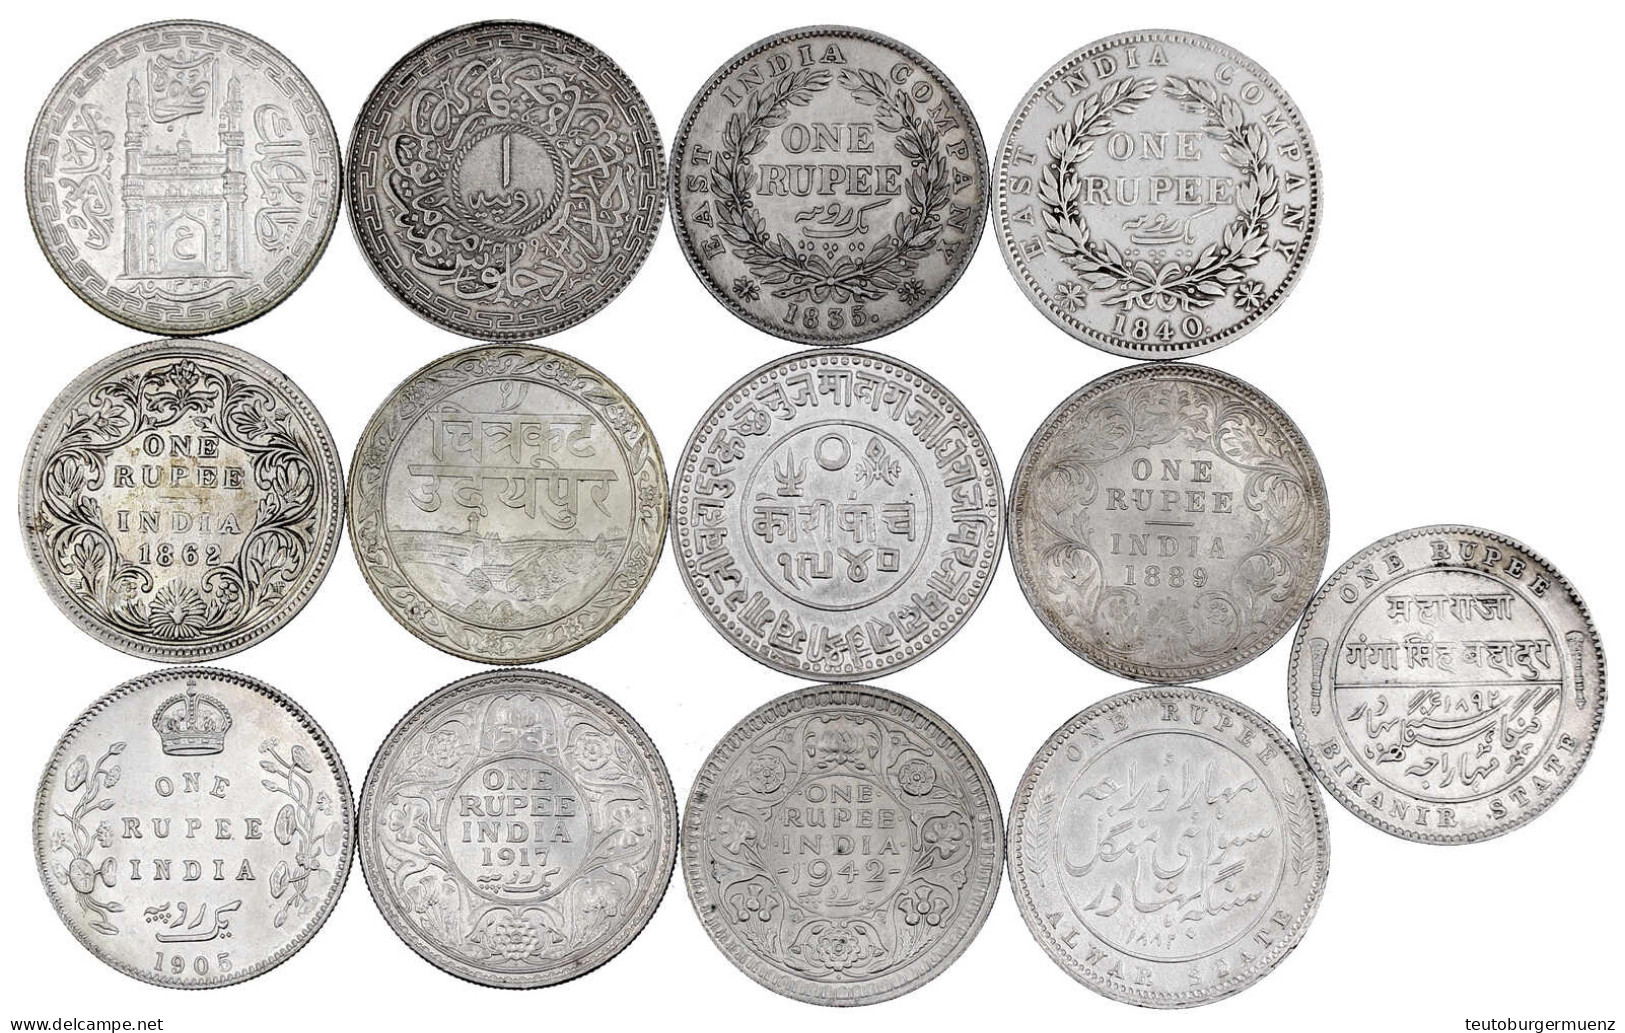 13 Silbermünzen: Rupien Britisch-Indien 1835, 1840, 1862, 1889, 1905, 1917, 1942, Alwar 1882, Bikanir 1892, Hyderabad AH - Inde